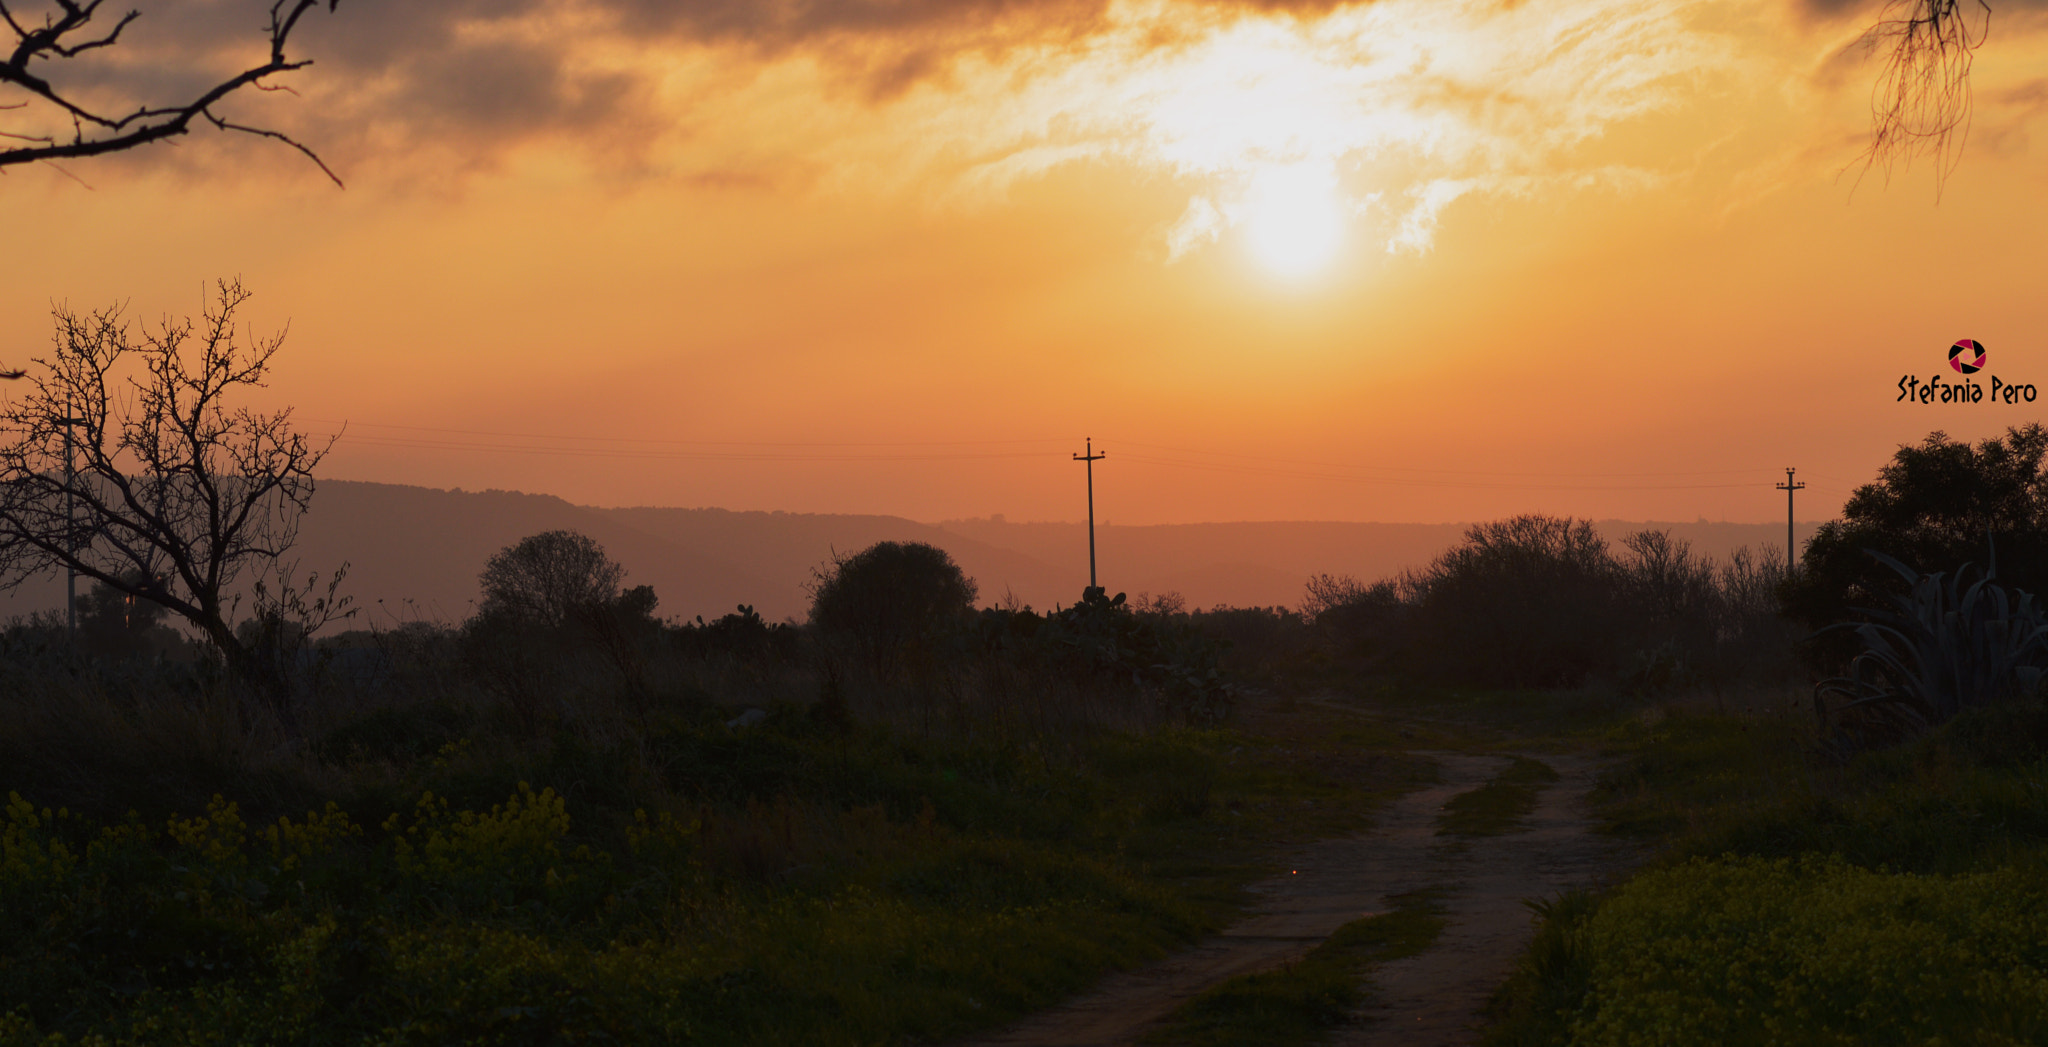 AF Zoom-Nikkor 35-80mm f/4-5.6D N + 2x sample photo. Special sunset. photography